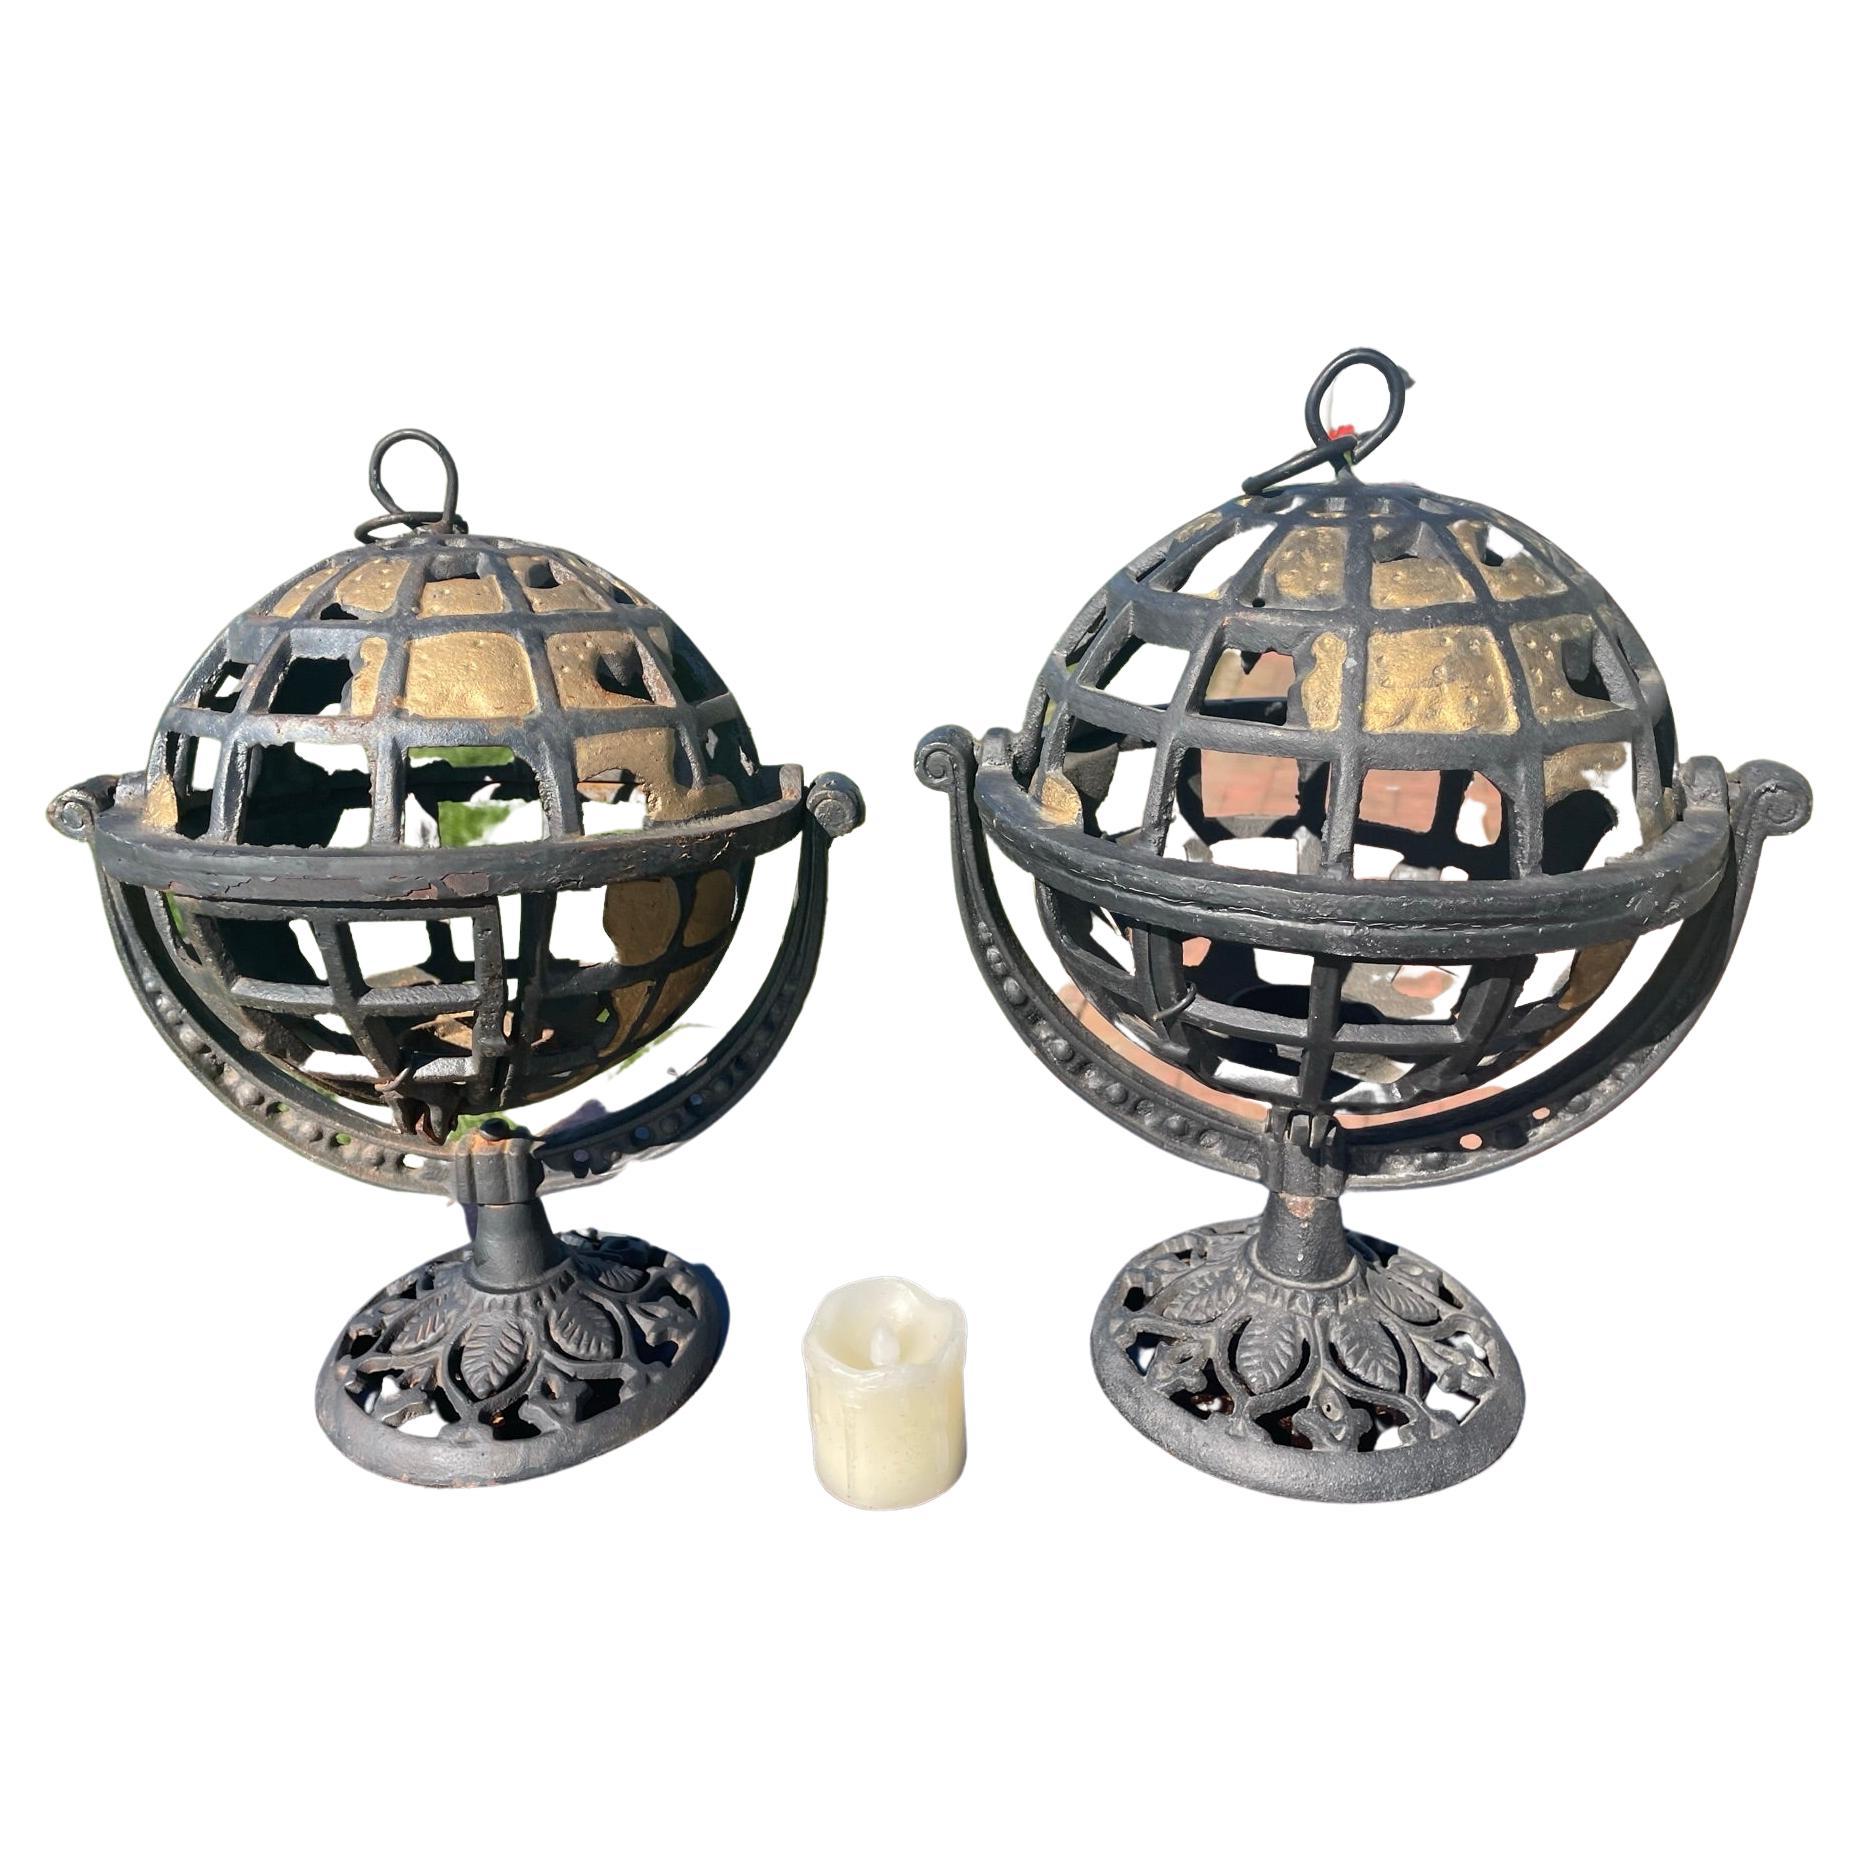 Rare paire japonaise de lanternes Globe Lighting de l'ancien monde